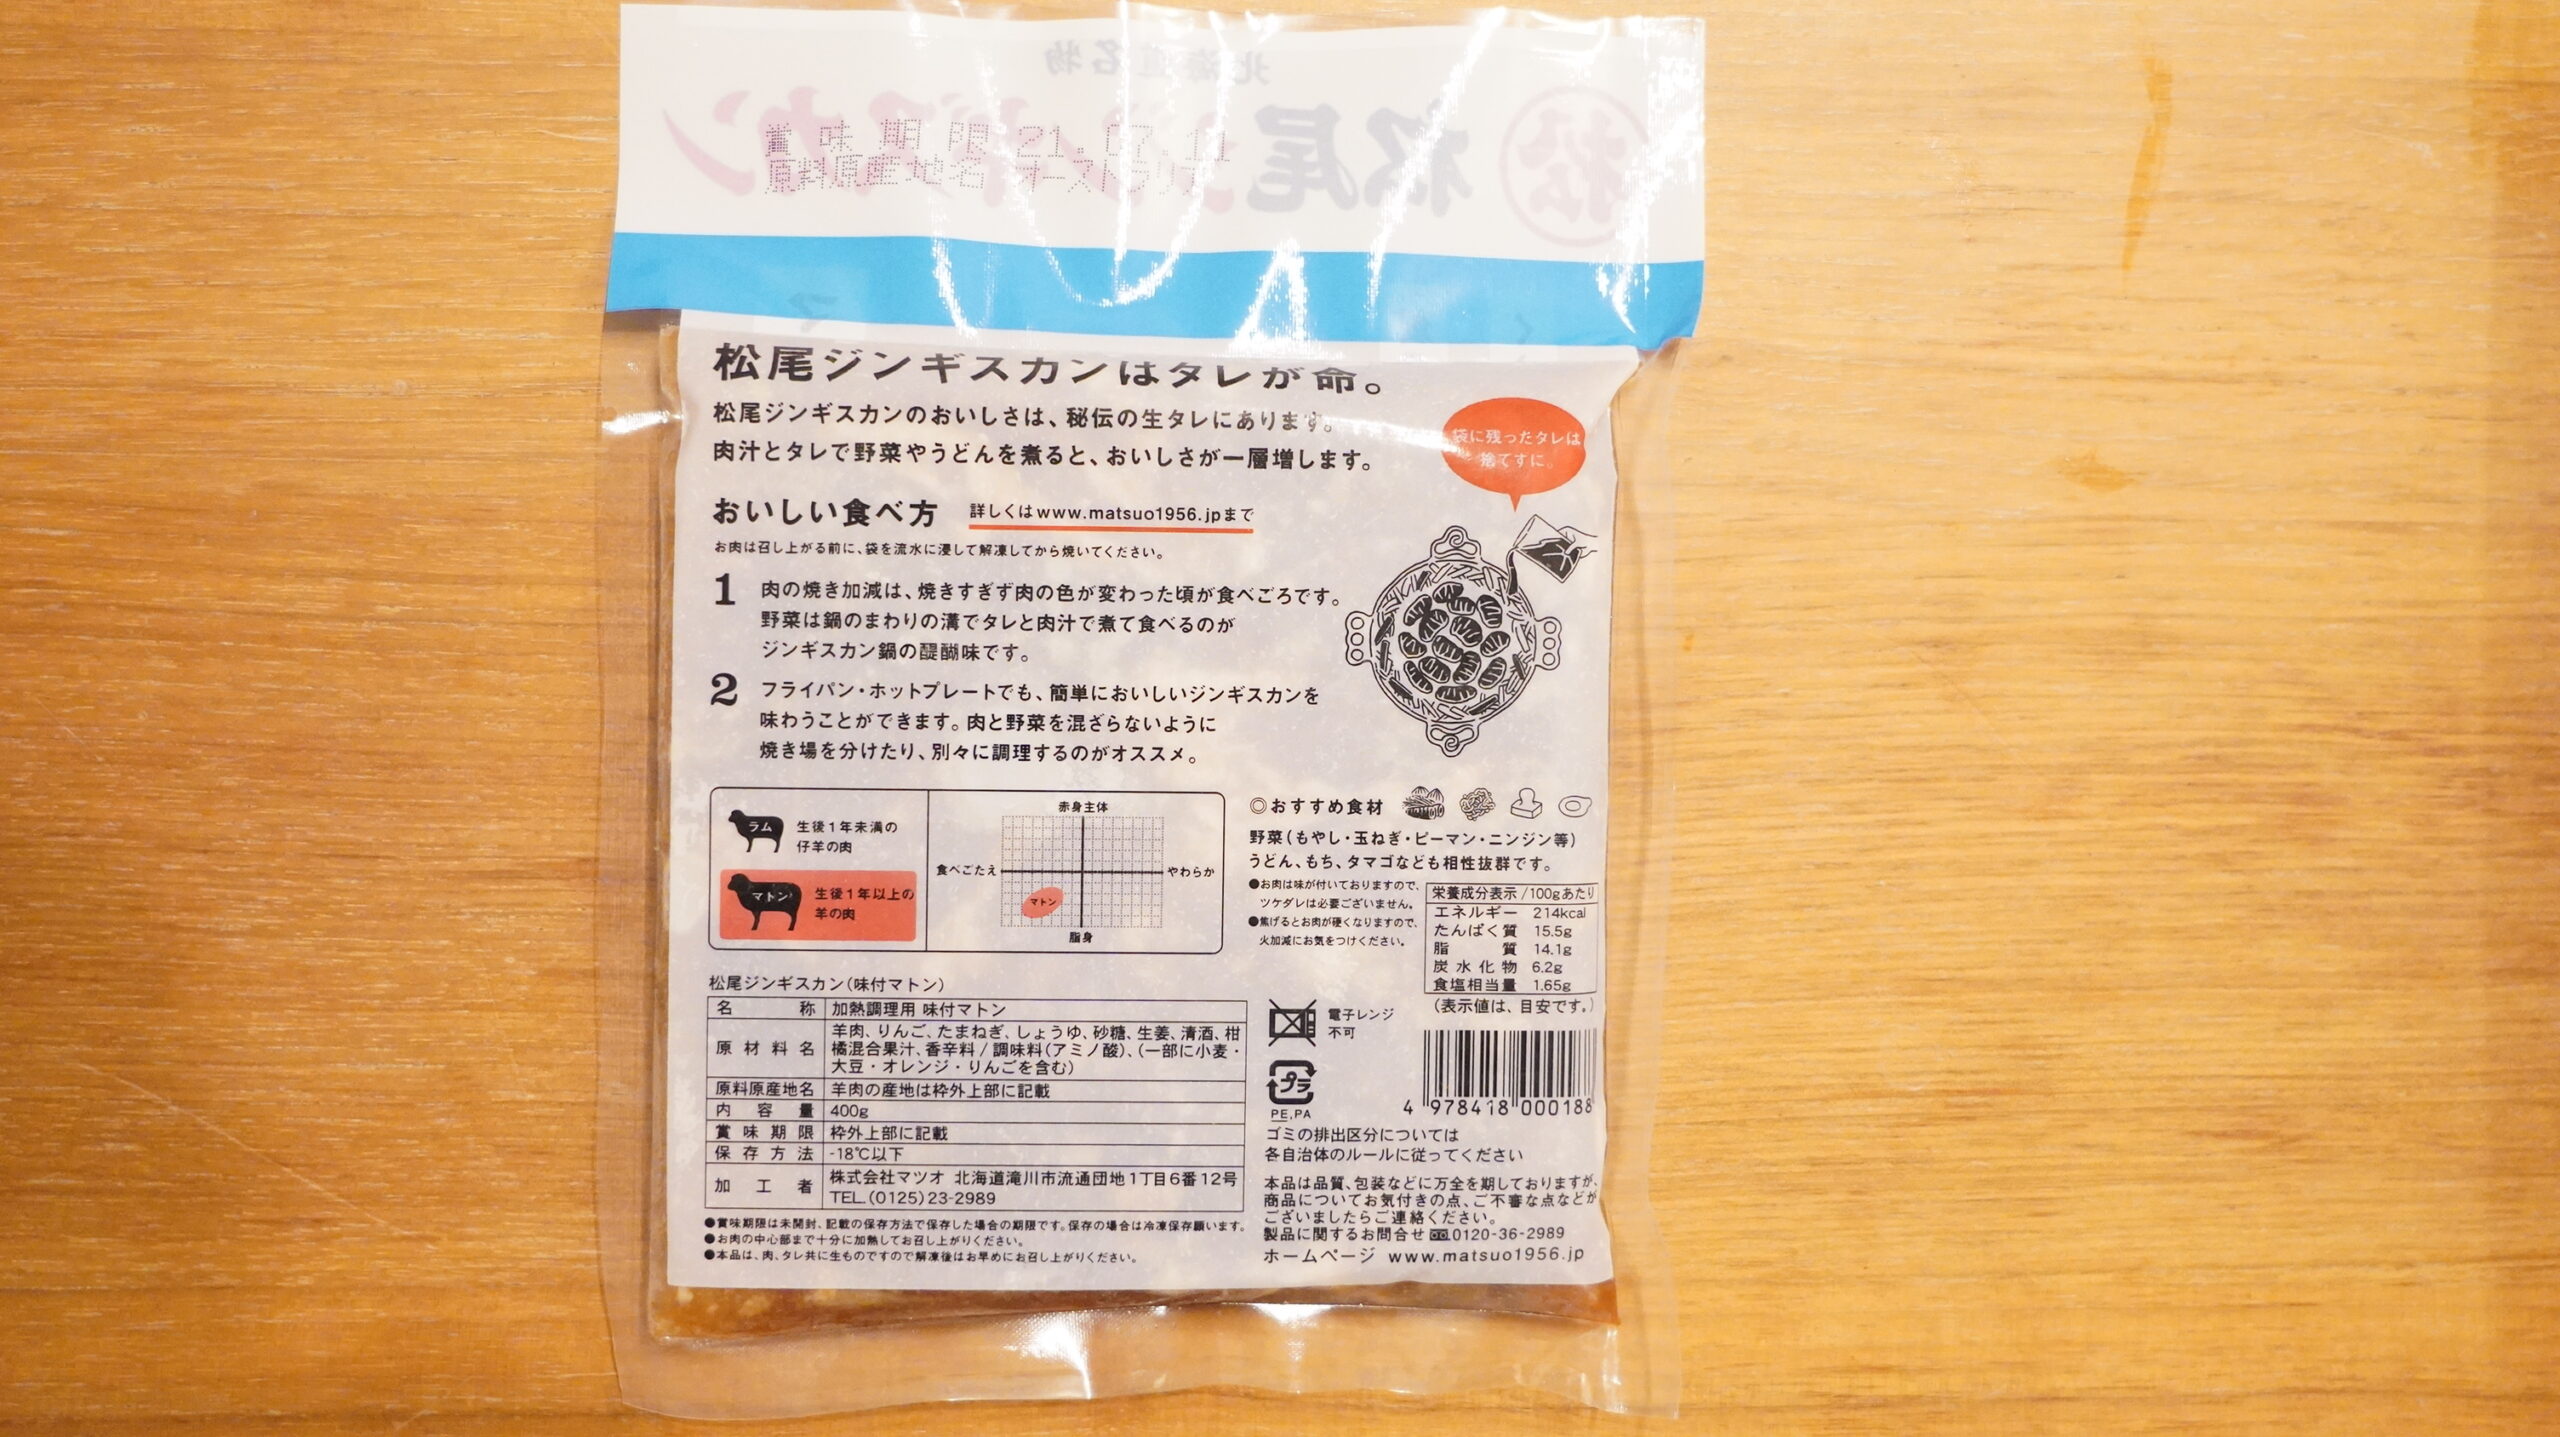 松尾ジンギスカンを通販でお取り寄せした冷凍マトン肉のパッケージ裏面の写真